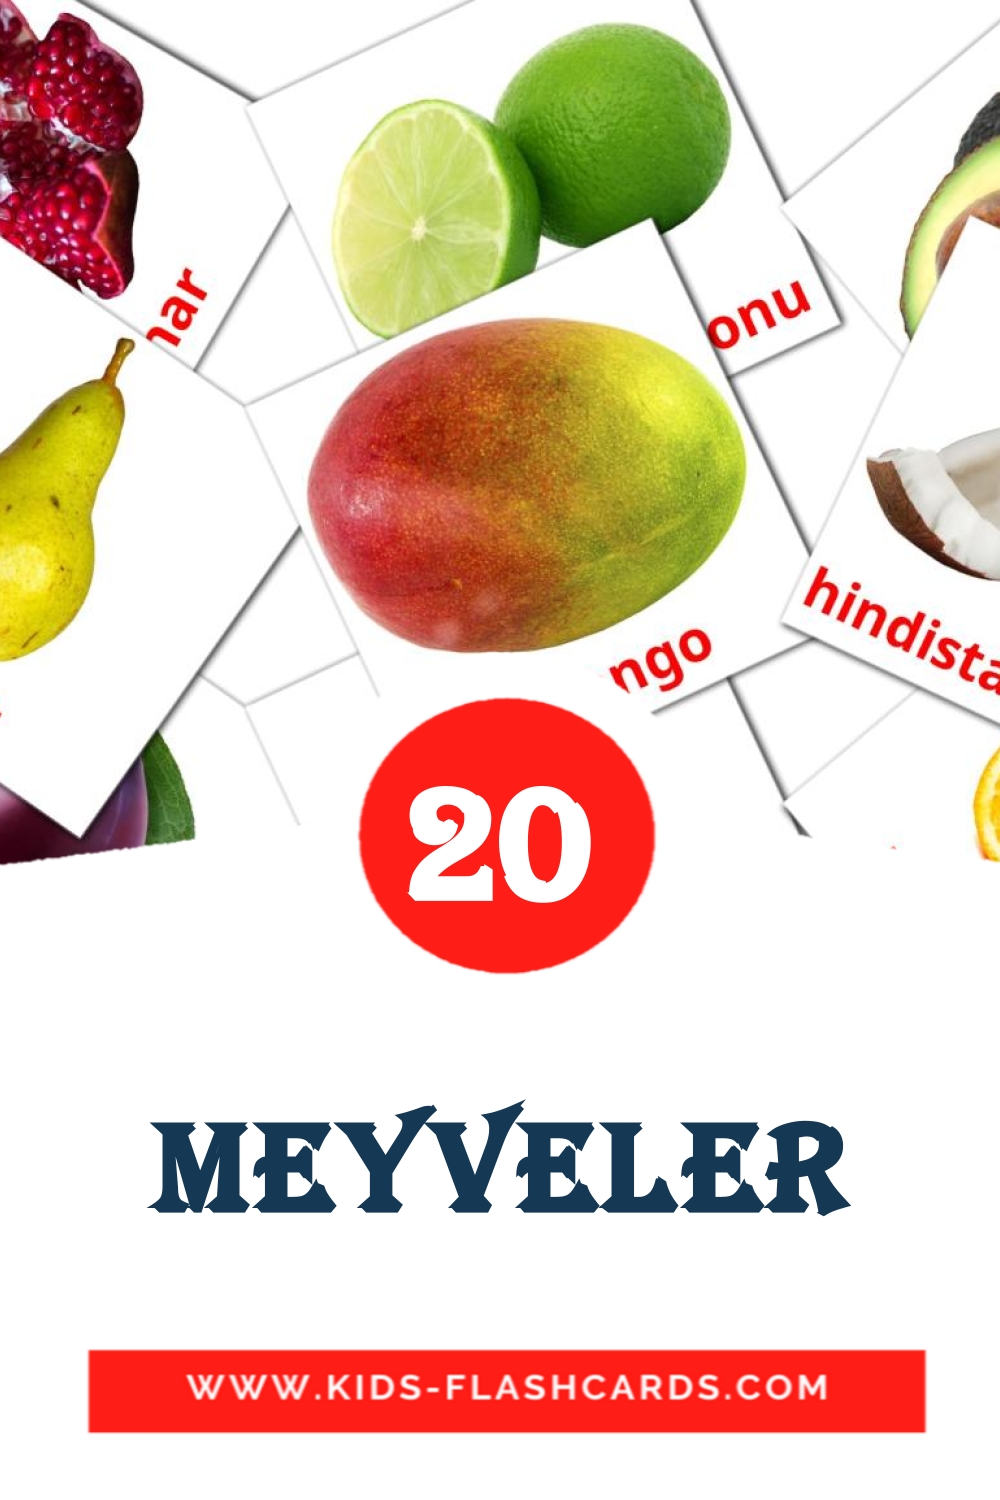 Meyveler на турецком для Детского Сада (20 карточек)